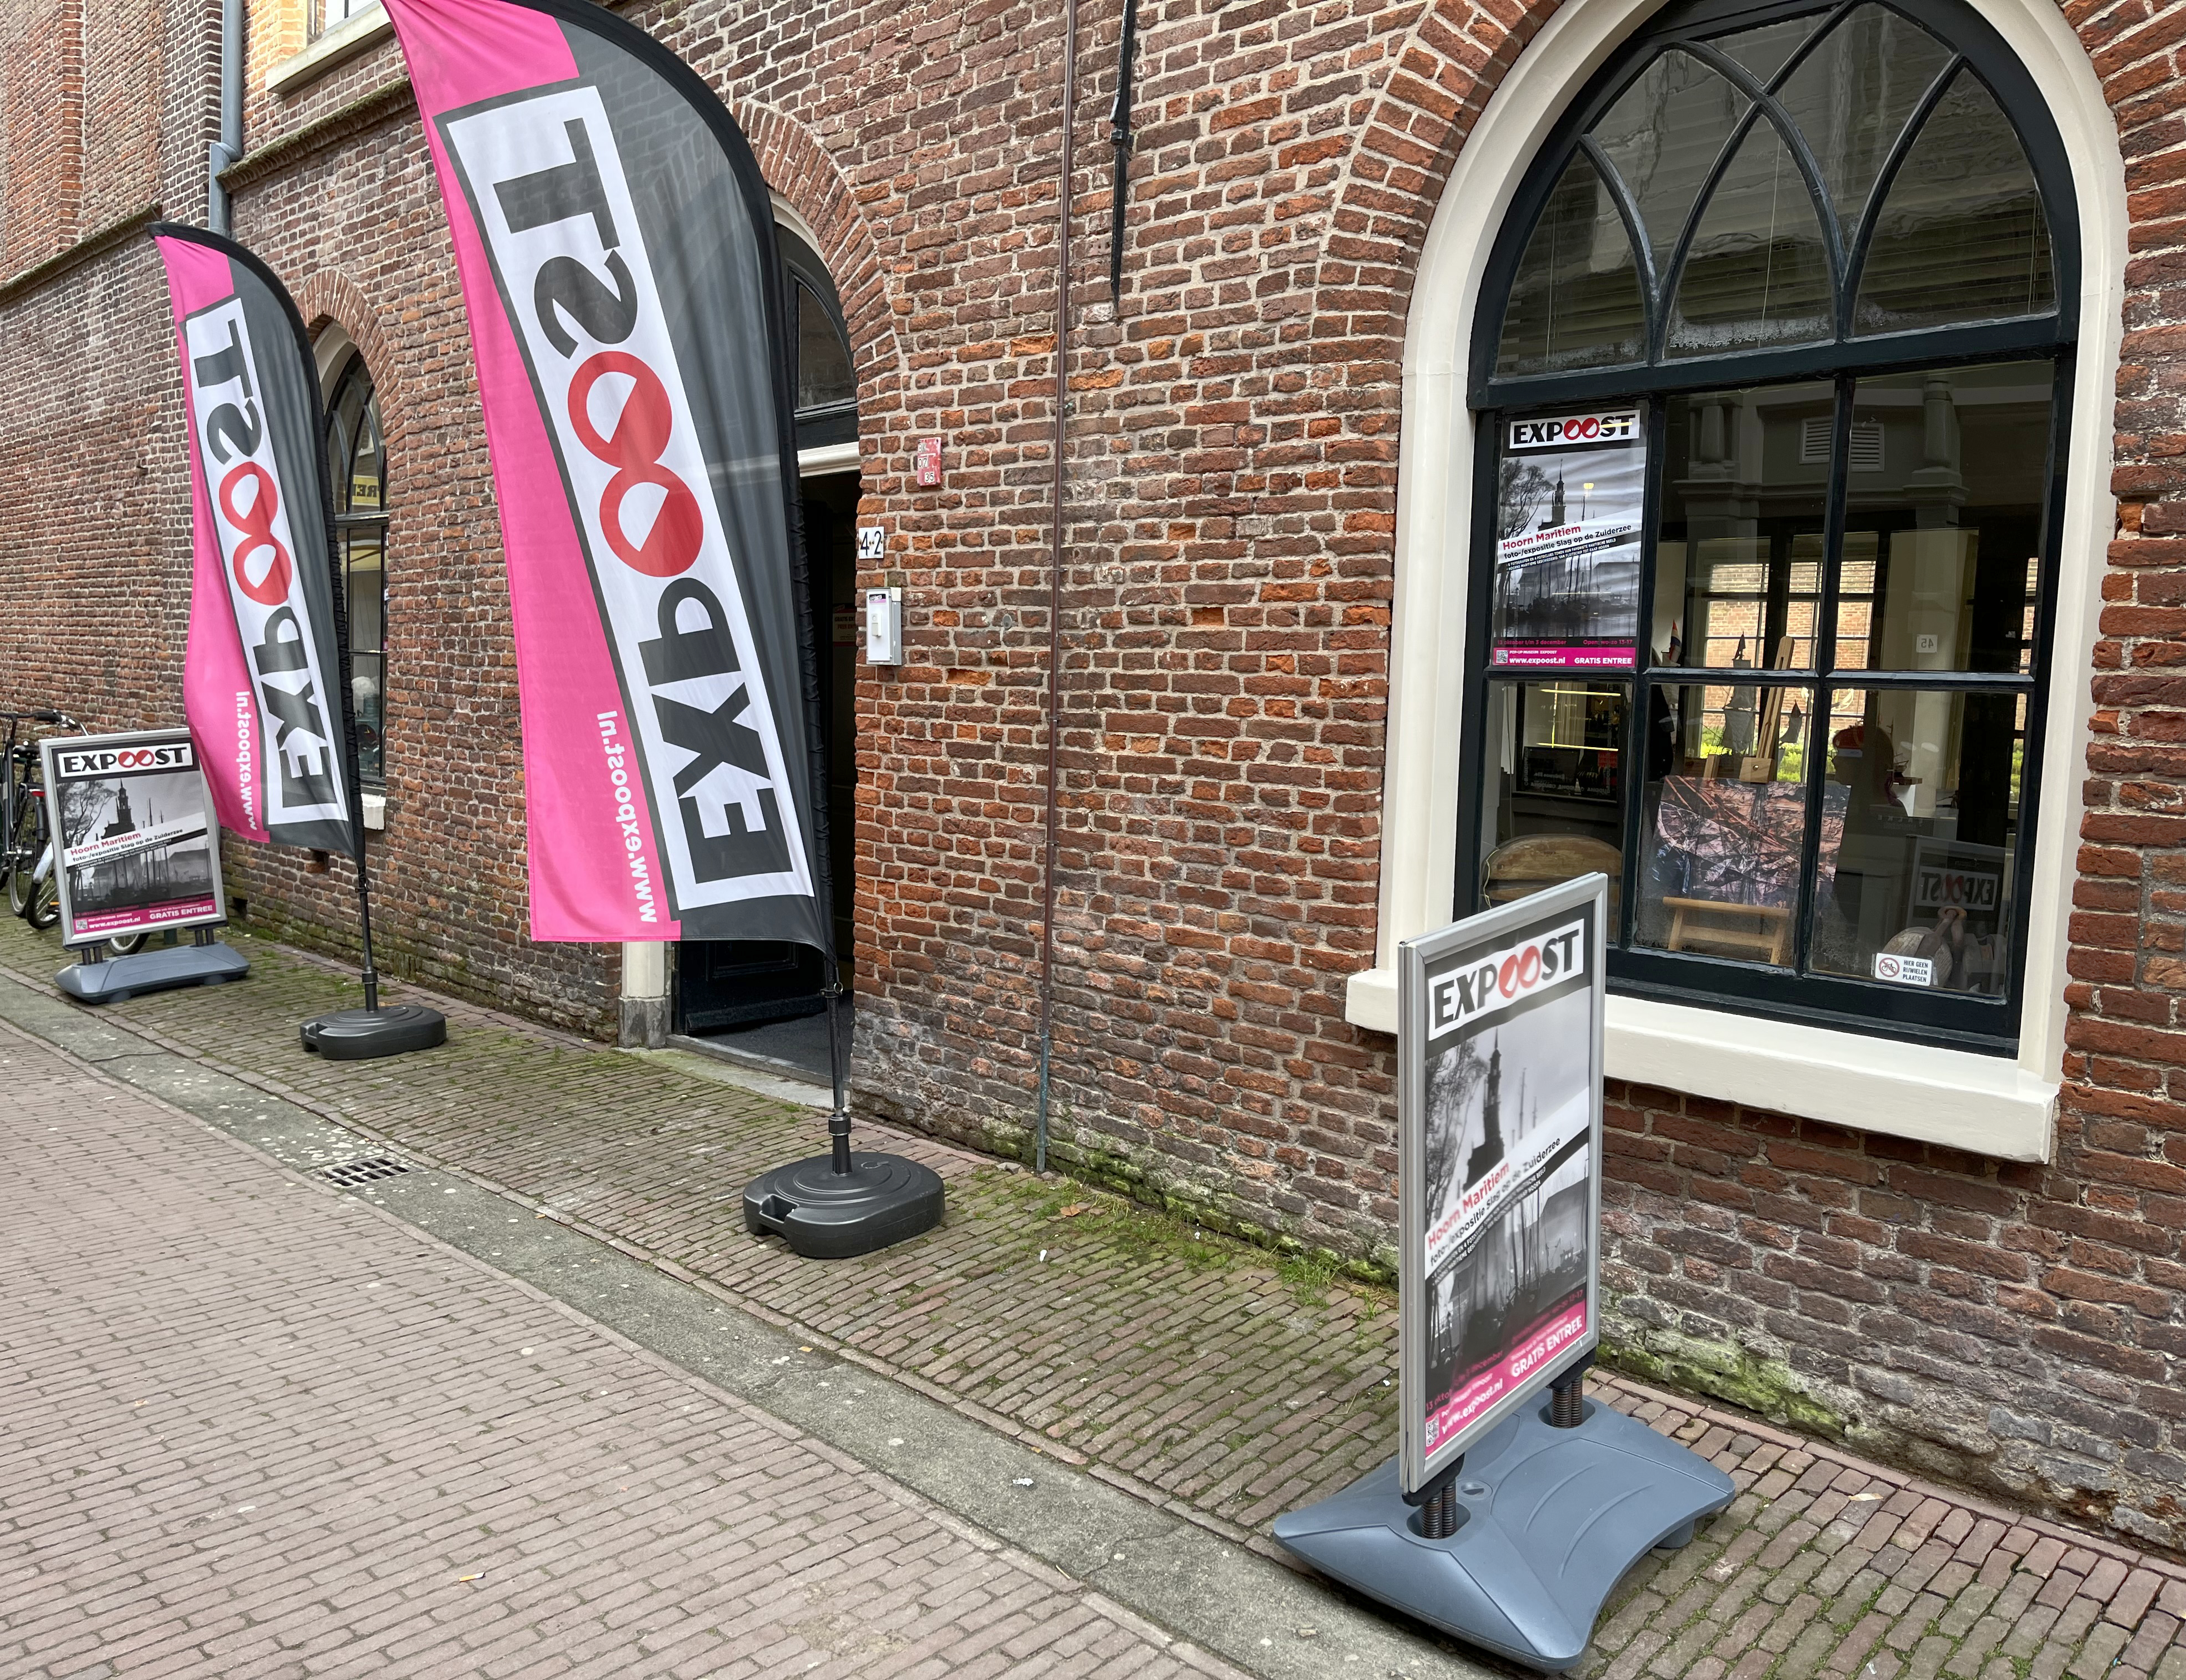 13: Pop-up museum Expoost in de Nieuwsteeg